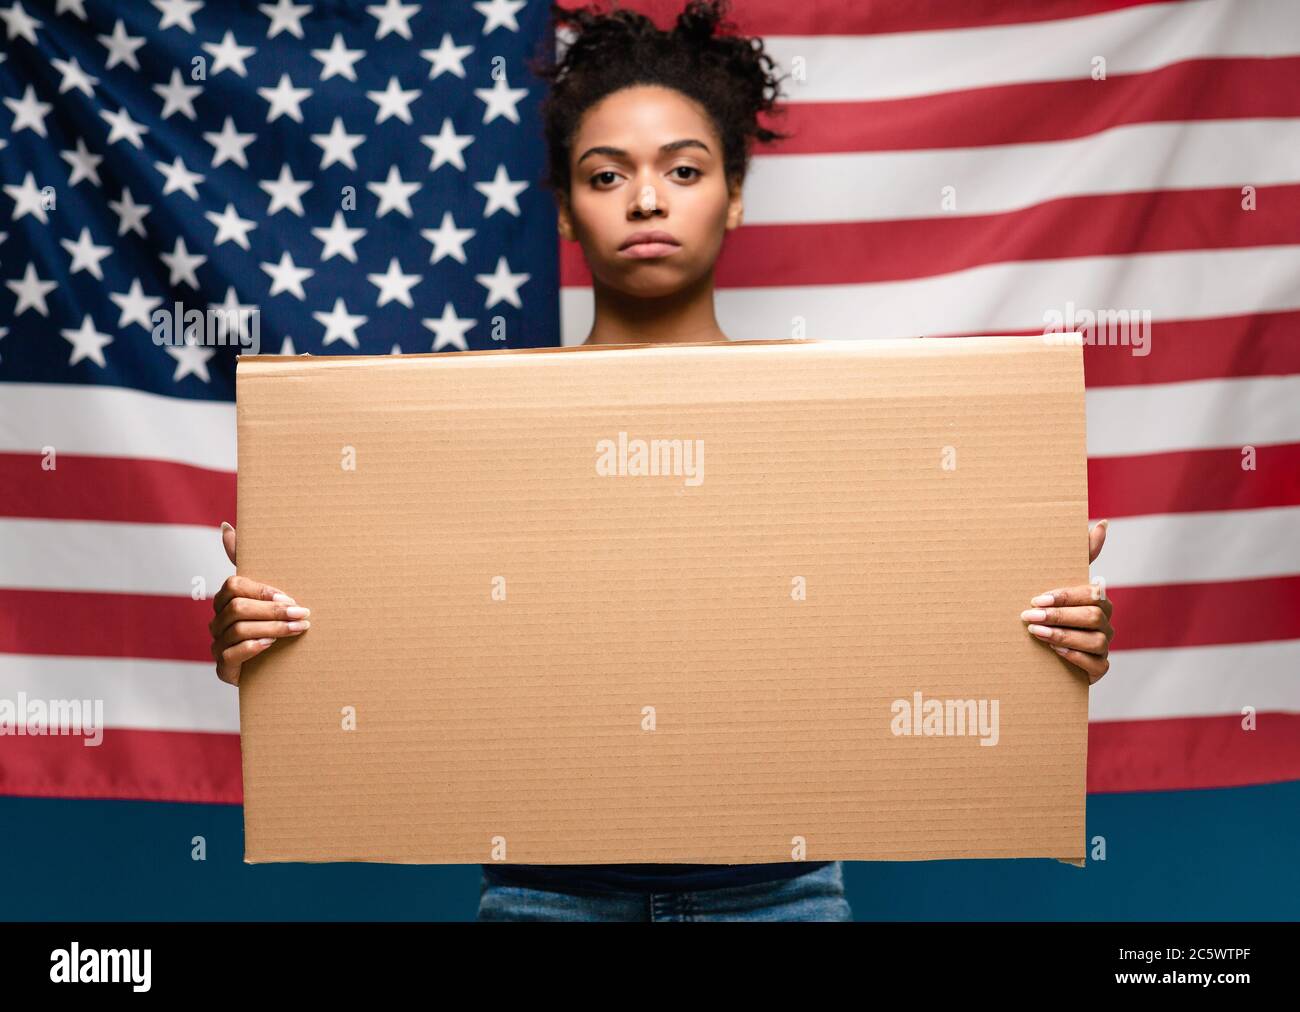 Schwarzes Mädchen mit leerem Karton über amerikanischer Flagge stehend Stockfoto